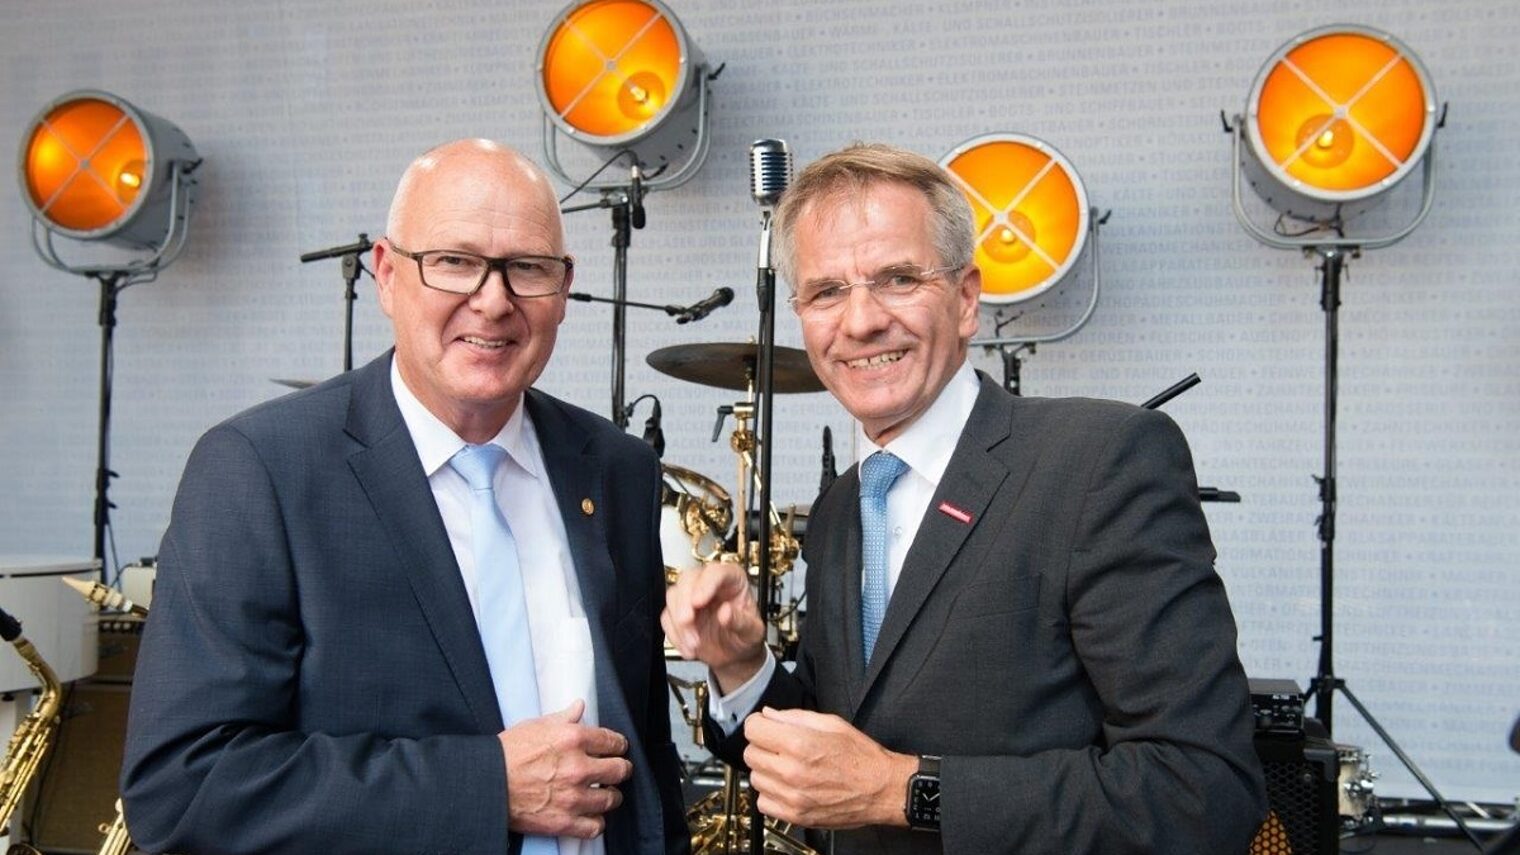 Ralf Scheler, Oberbürgermeister der Stadt Eilenburg und Andreas Ehlert, Präsident der HWK Düsseldorf